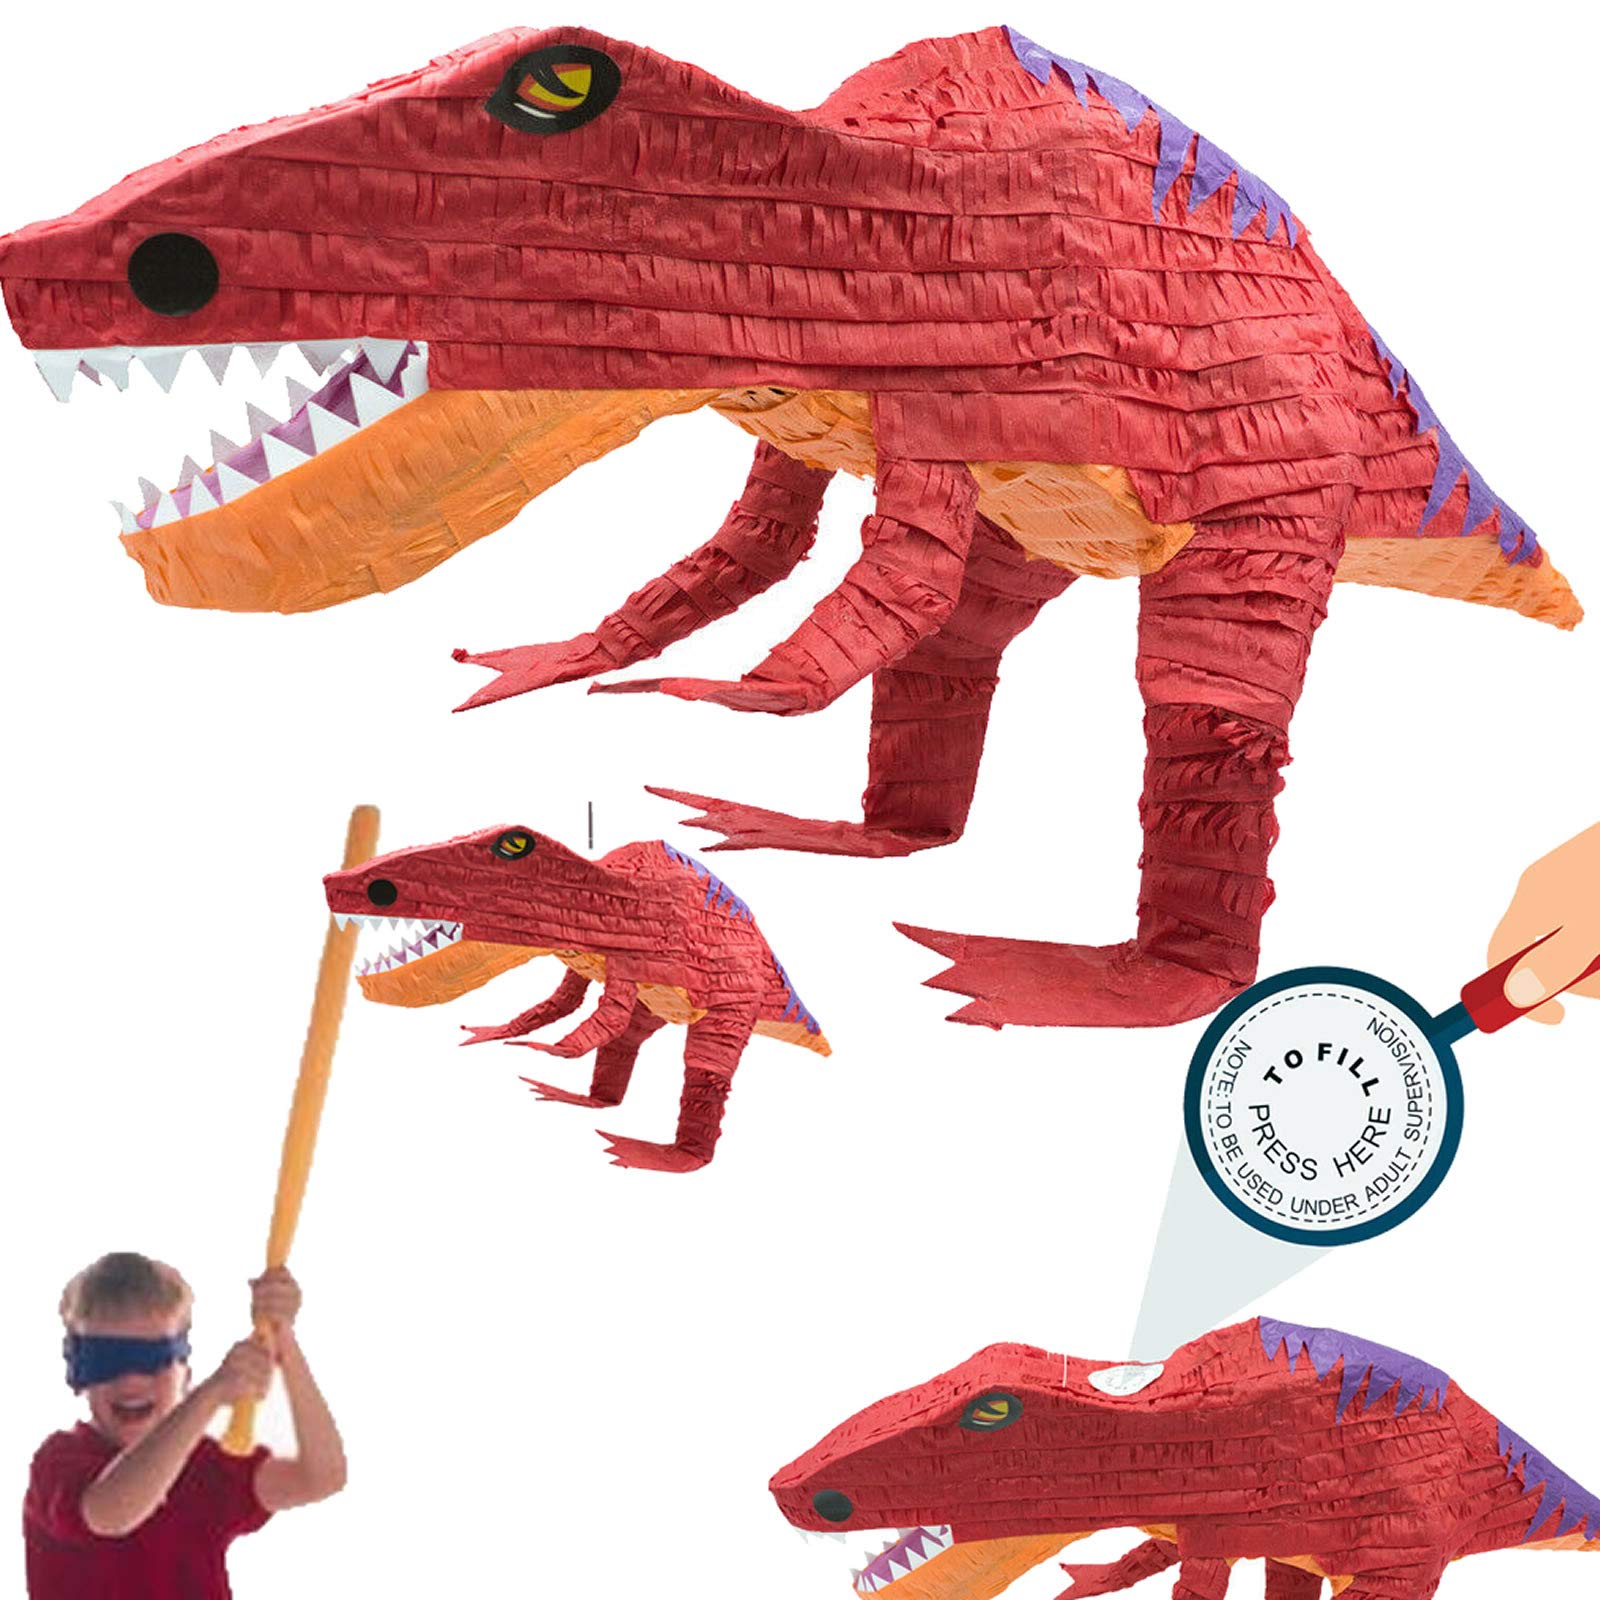 Carpeta XL-Pinata * T-REX * als Schlagpinata für Kindergeburtstag | Größe: 60x30x25cm | Piñata für Kinder | Dino Dinosaurier Geburtstag Party Spiele